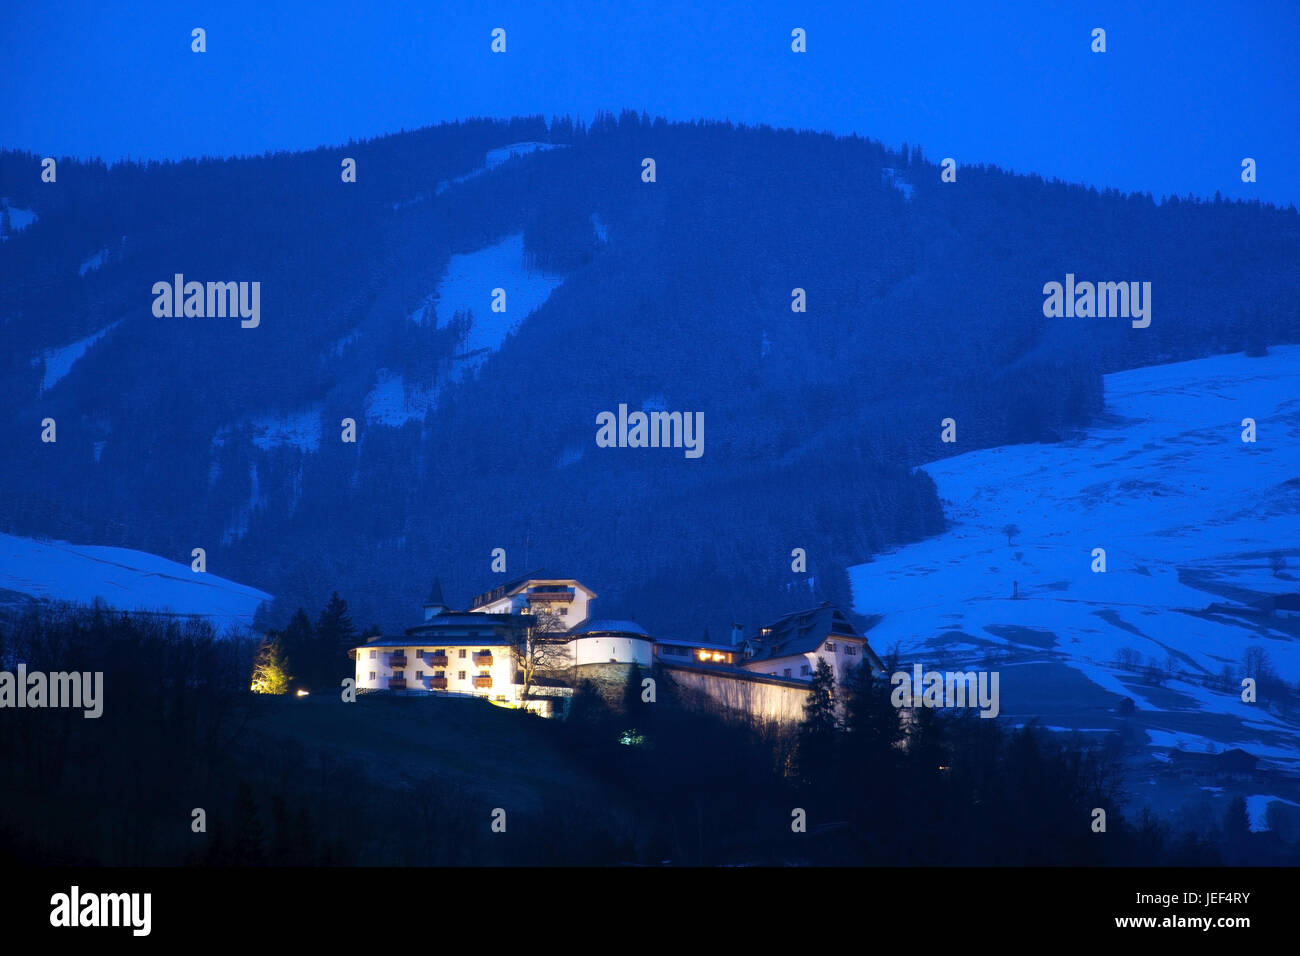 Night admission of the castle Mittersill, situated in the Pinzgau in Austria., Nachtaufnahme des Schloss Mittersill, gelegen im Pinzgau in Österreich. Stock Photo